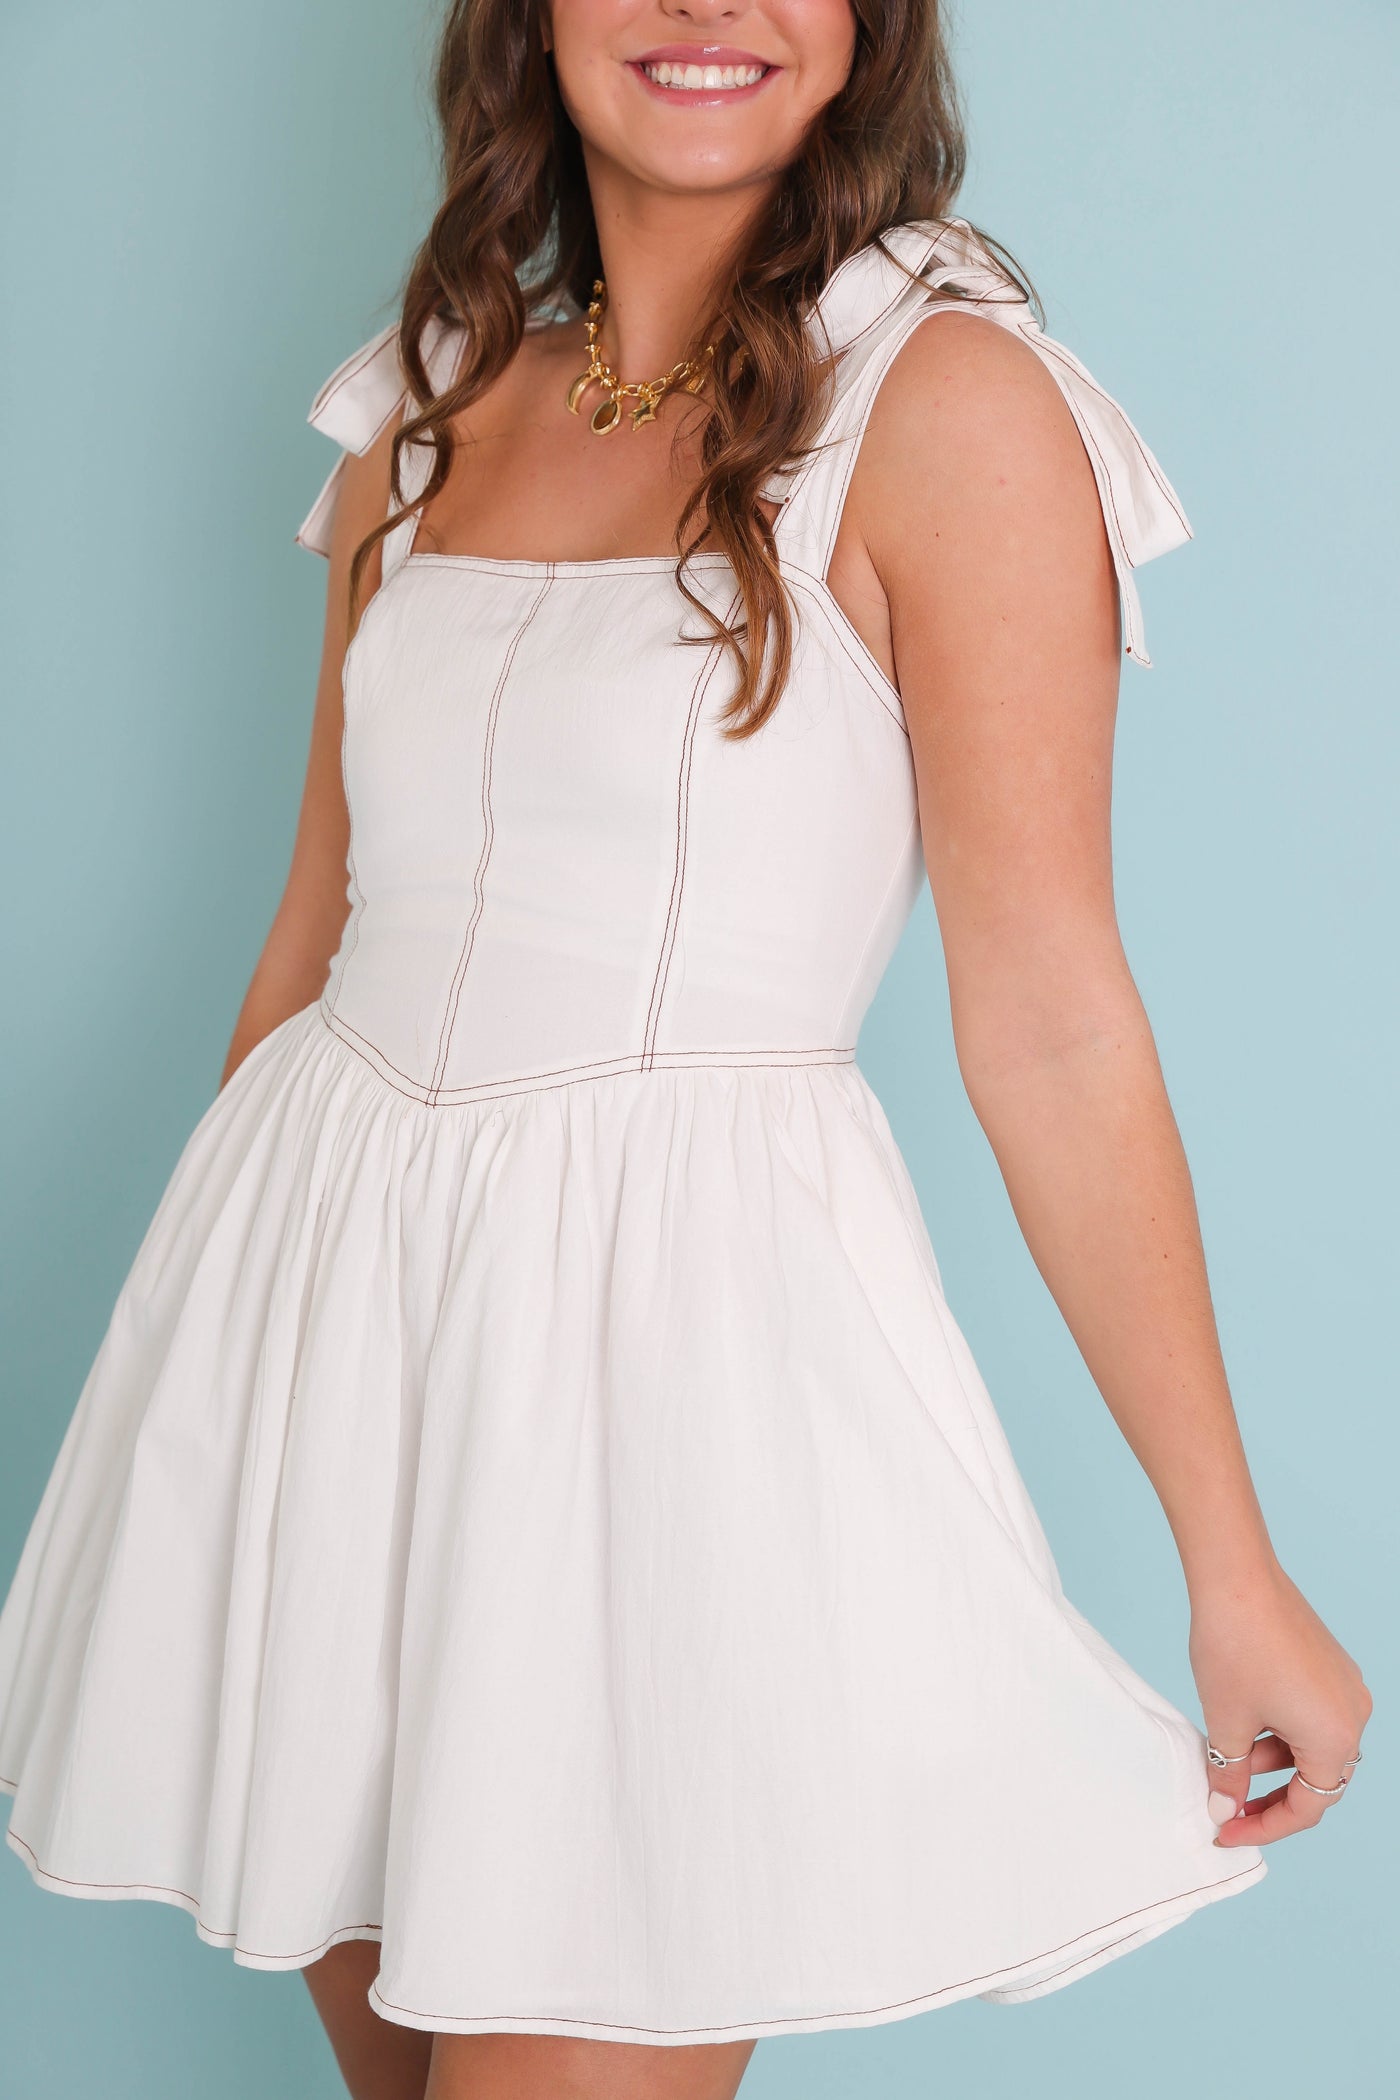 White Denim Mini Dress- Coastal Cowgirl Dresses- Women's White Mini Dress